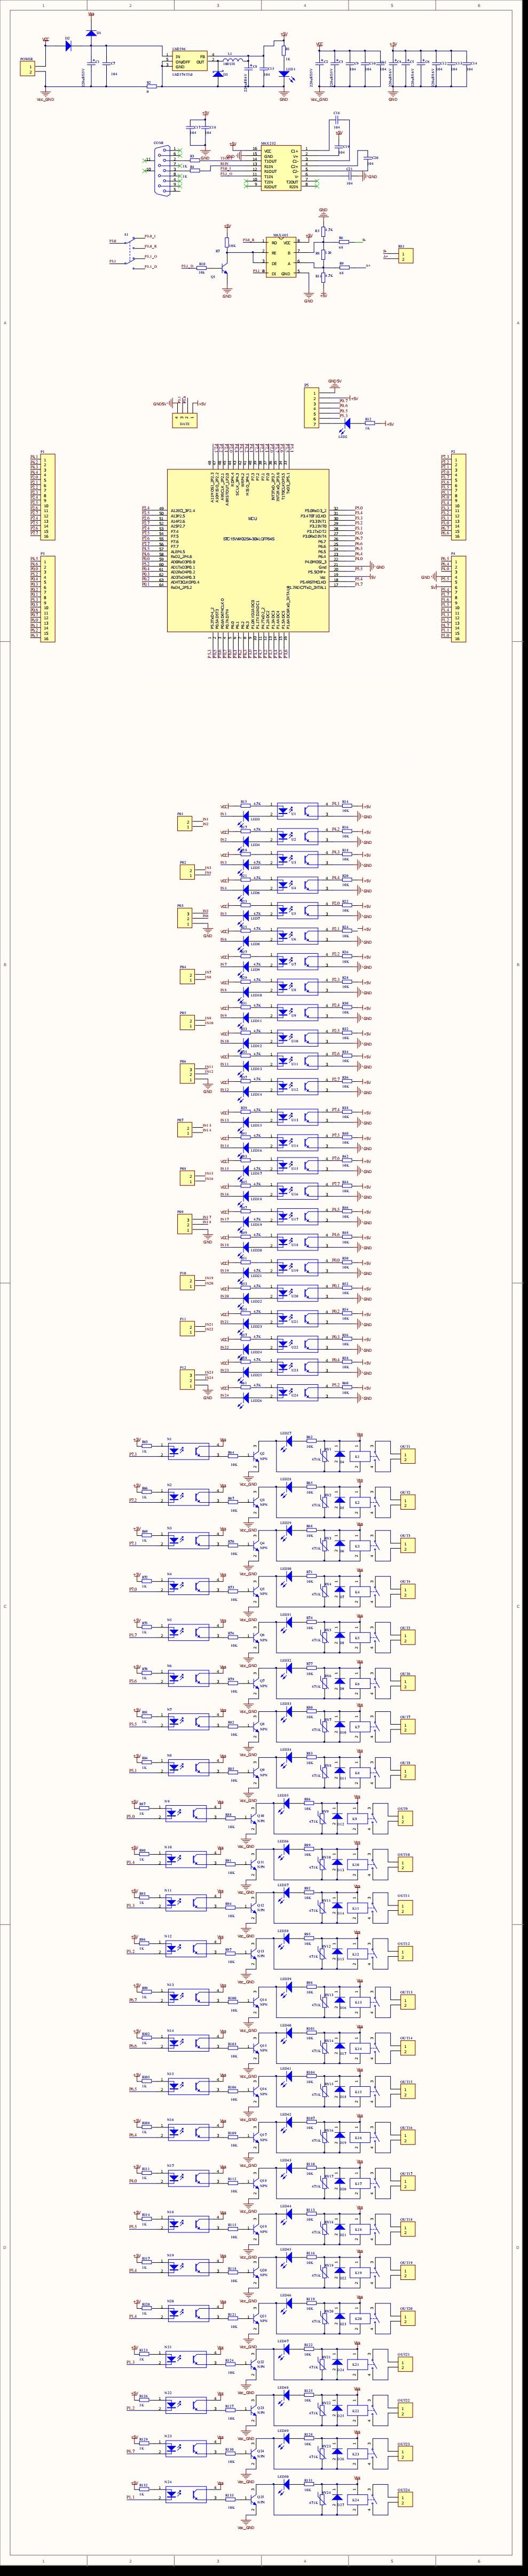 GYJ-0271_24路输入输出继电器可编程工控板2代原理图_00.jpg